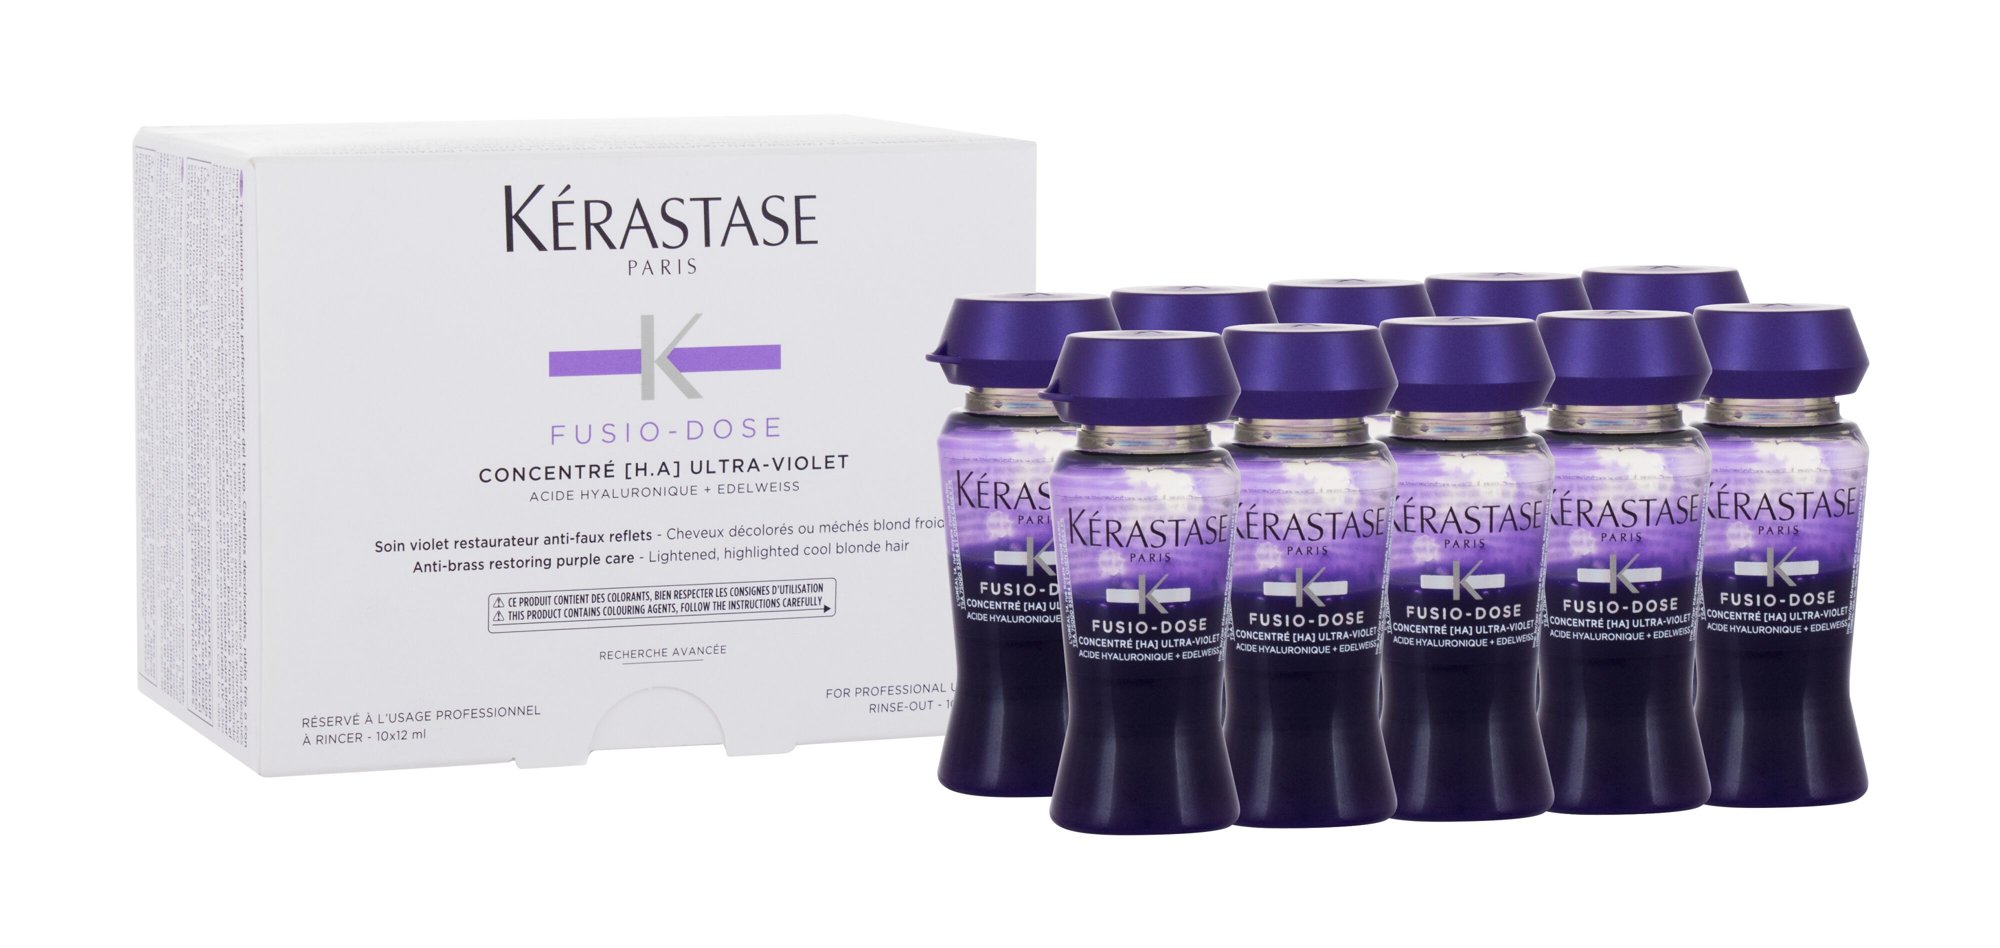 Kérastase Fusio-Dose Concentré [H.A] Ultra-Violet plaukų serumas